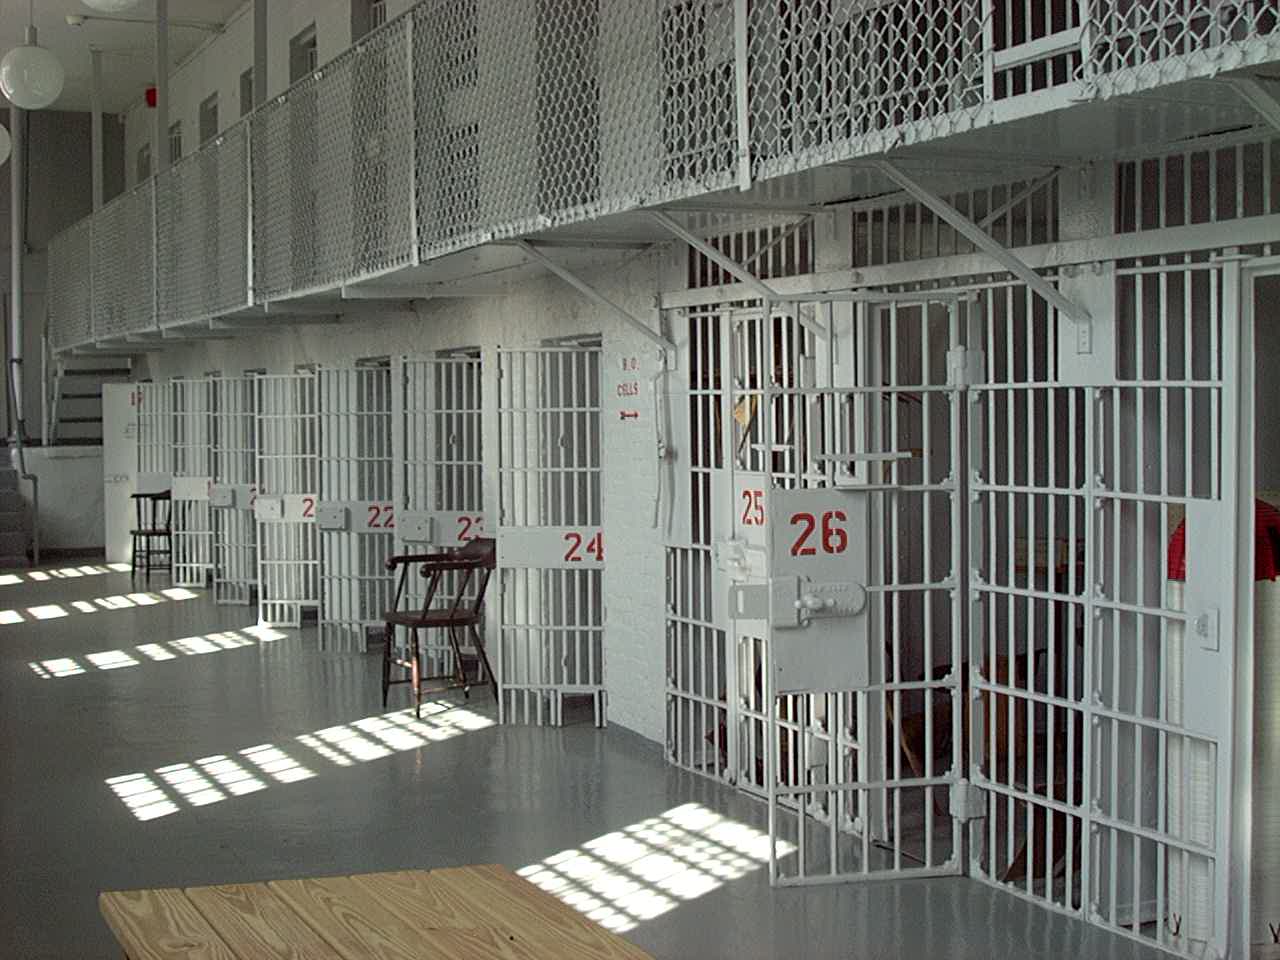 Tentohet të futen 3 celularë në burgun e Lezhës